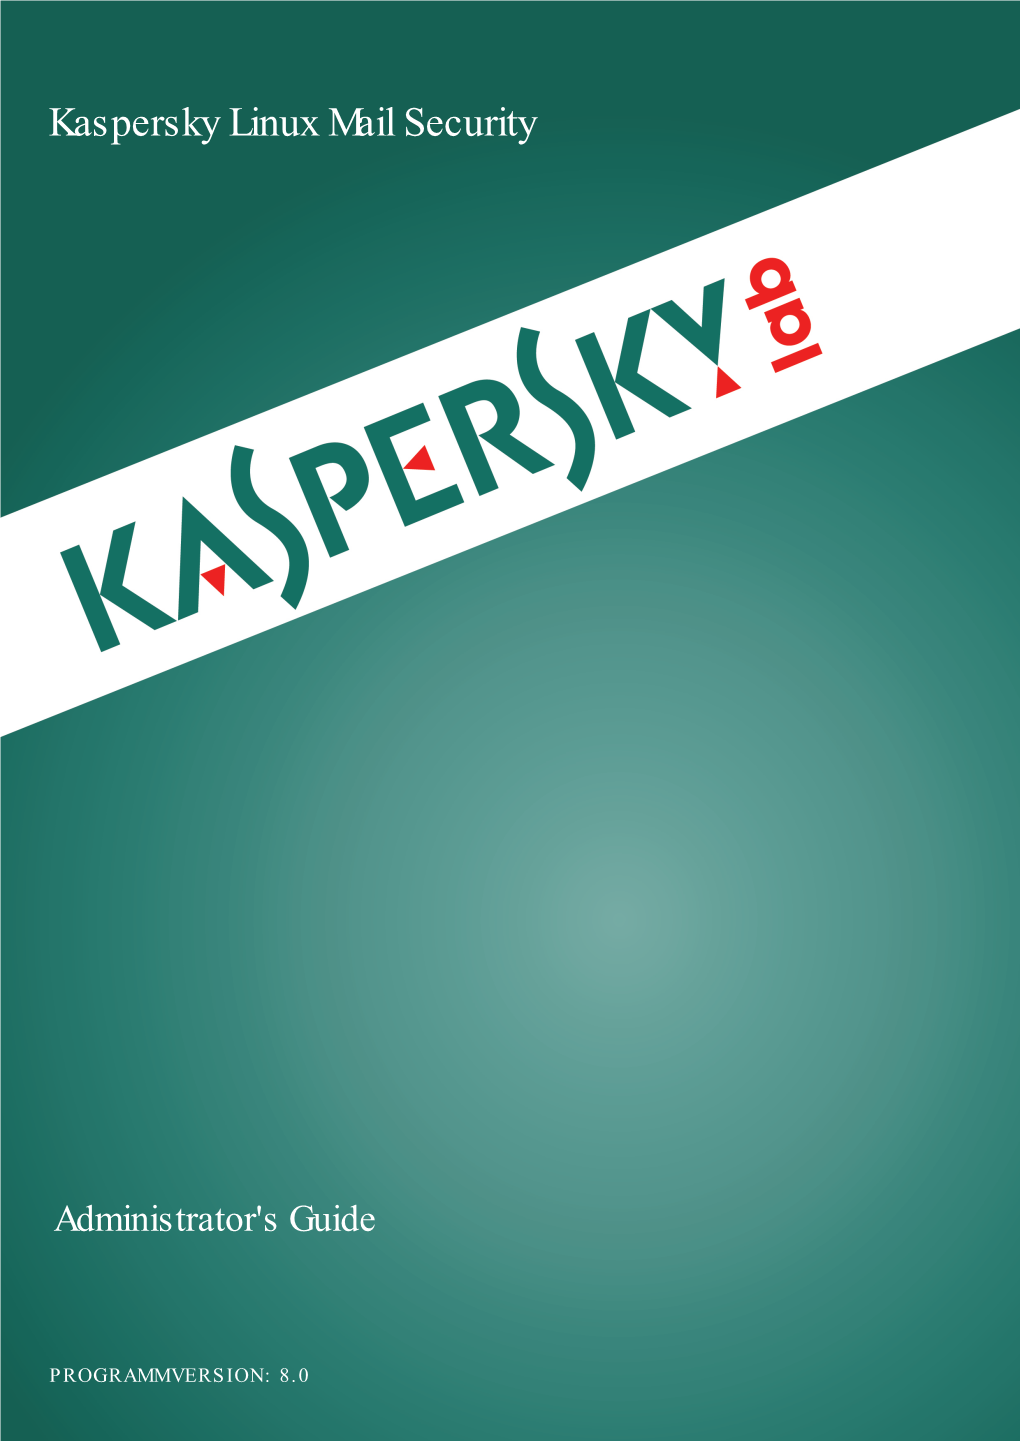 Kaspersky Security 8.0 for Linux Mail Server